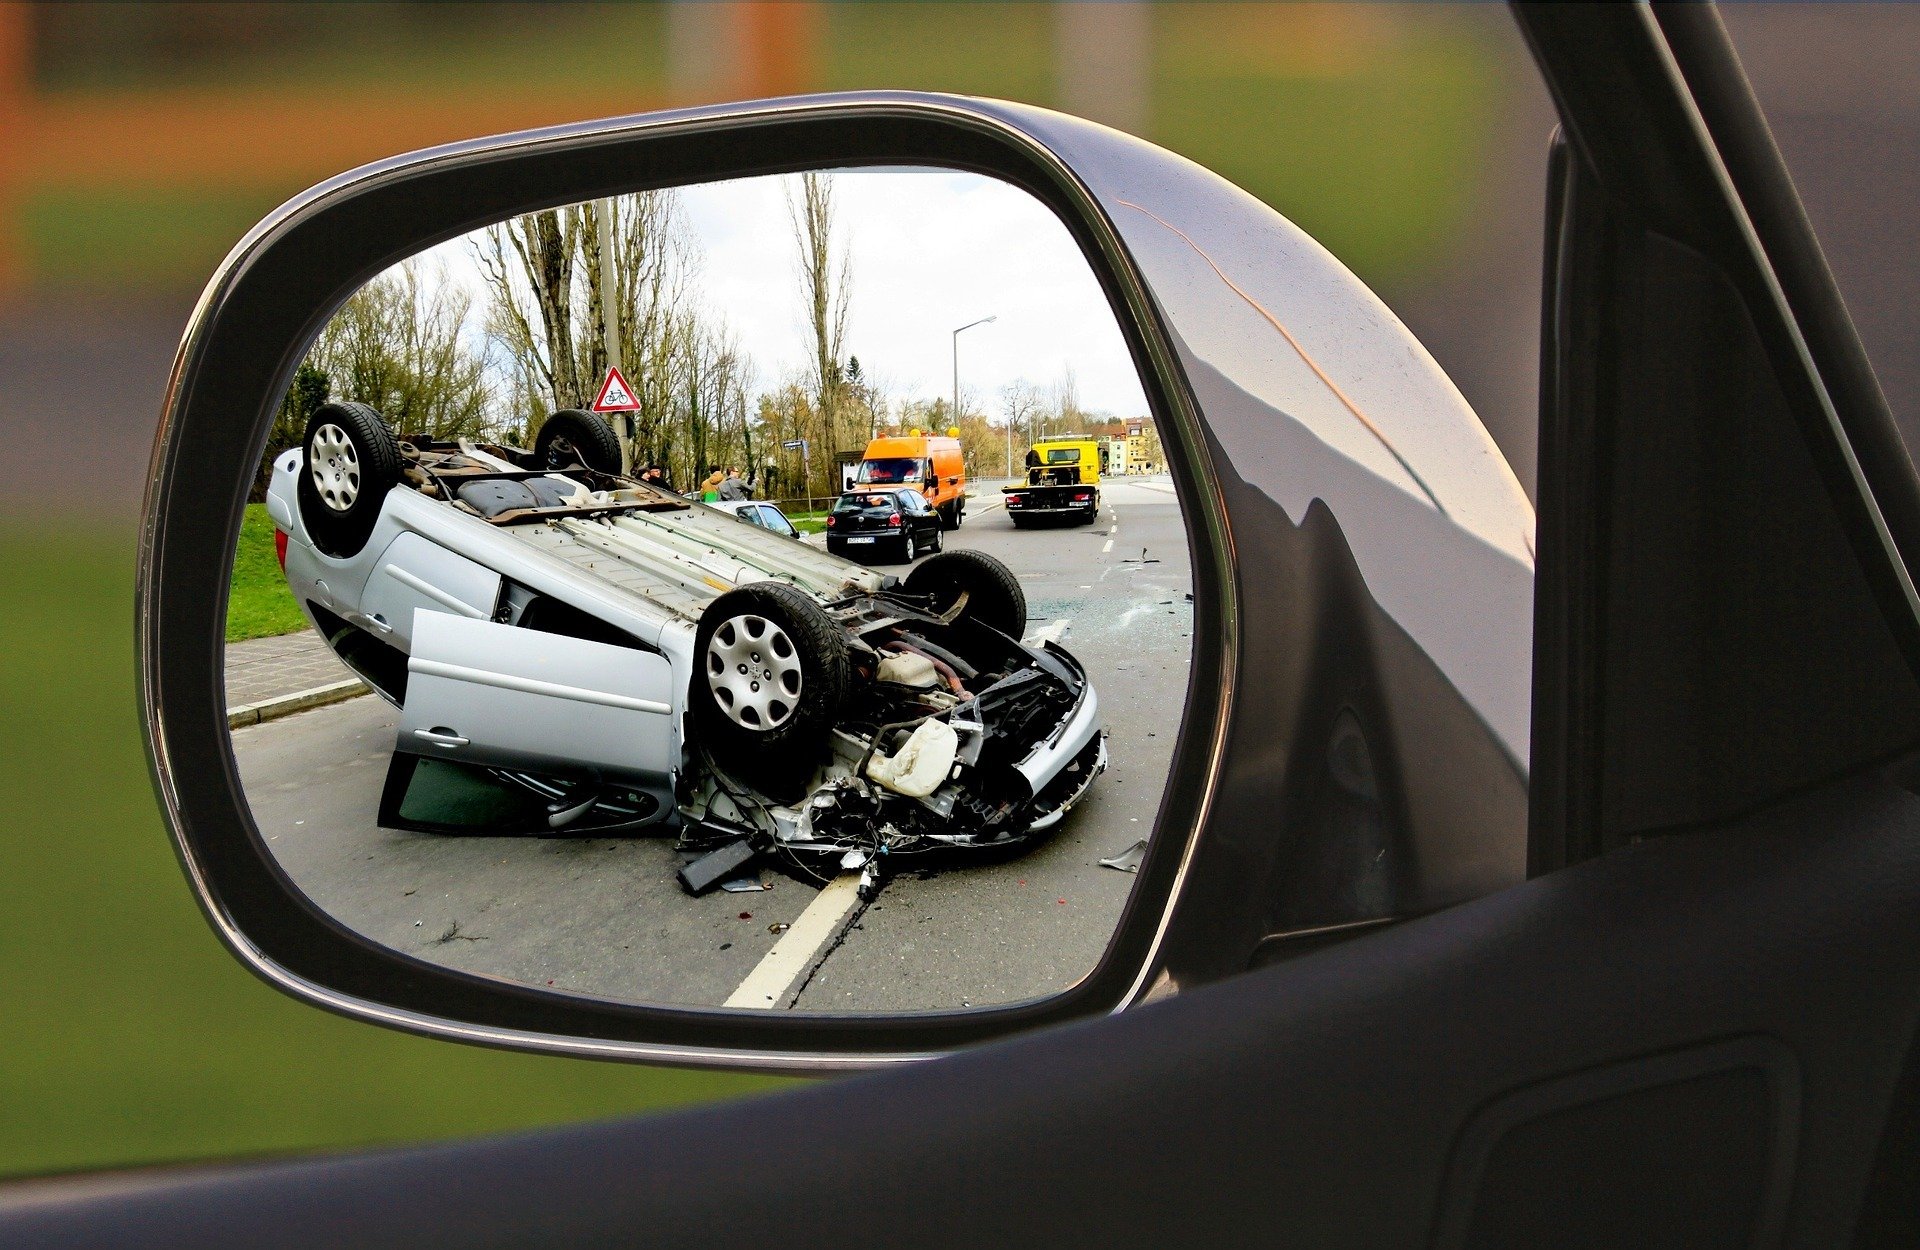 ראה תאונה האם חייב להודיע לחברו מי פגע ברכבו?